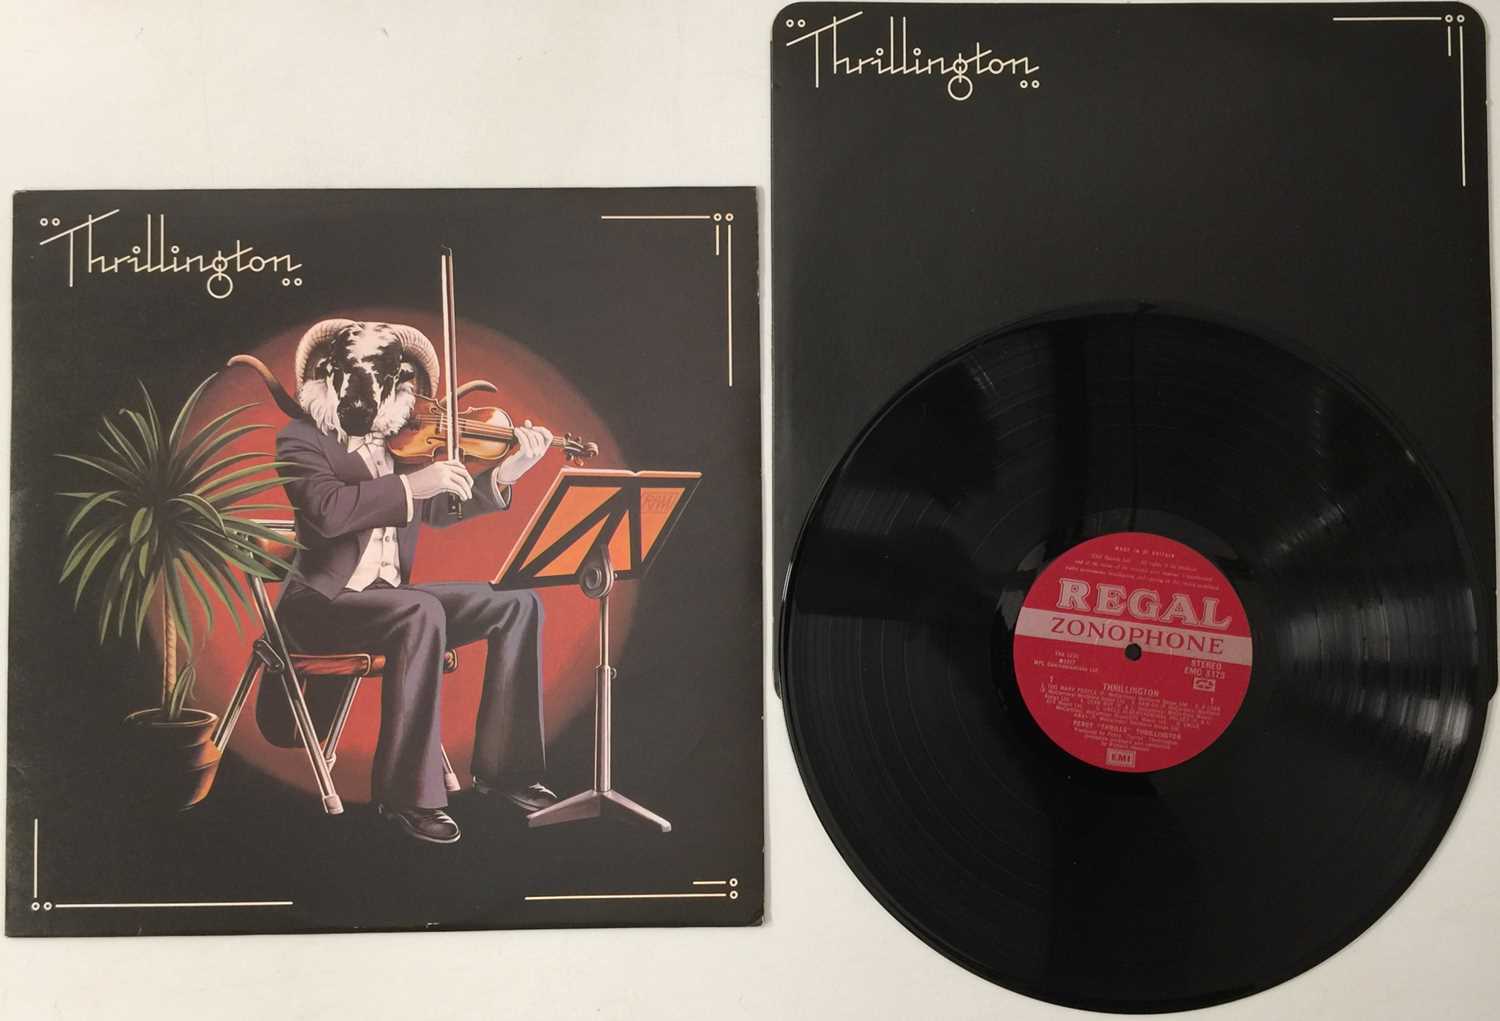 THRILLINGTON - THRILLINGTON LP (PAUL MCCARTNEY - UK OG - REGAL EMC 3175)